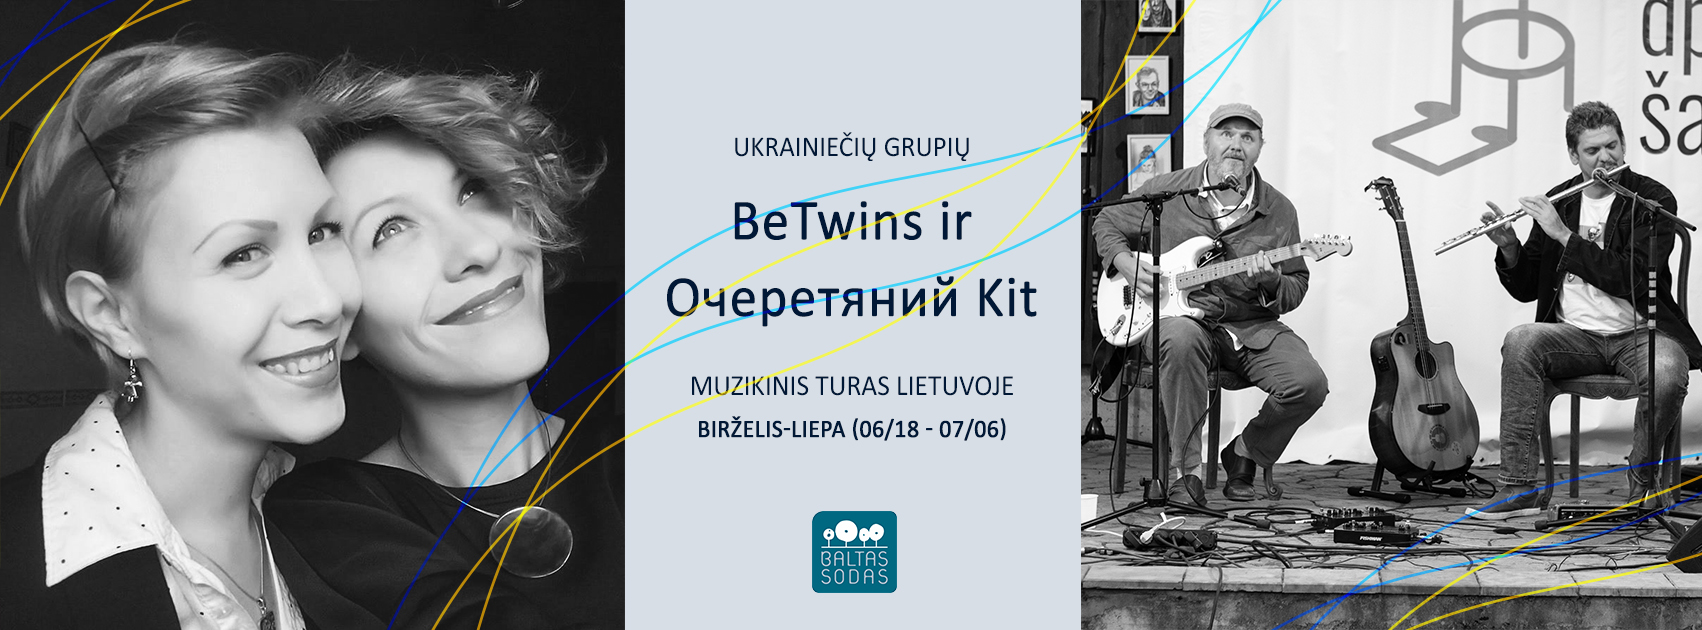 Очеретяний кіт ir BeTwins muzikinis turas Lietuvoje